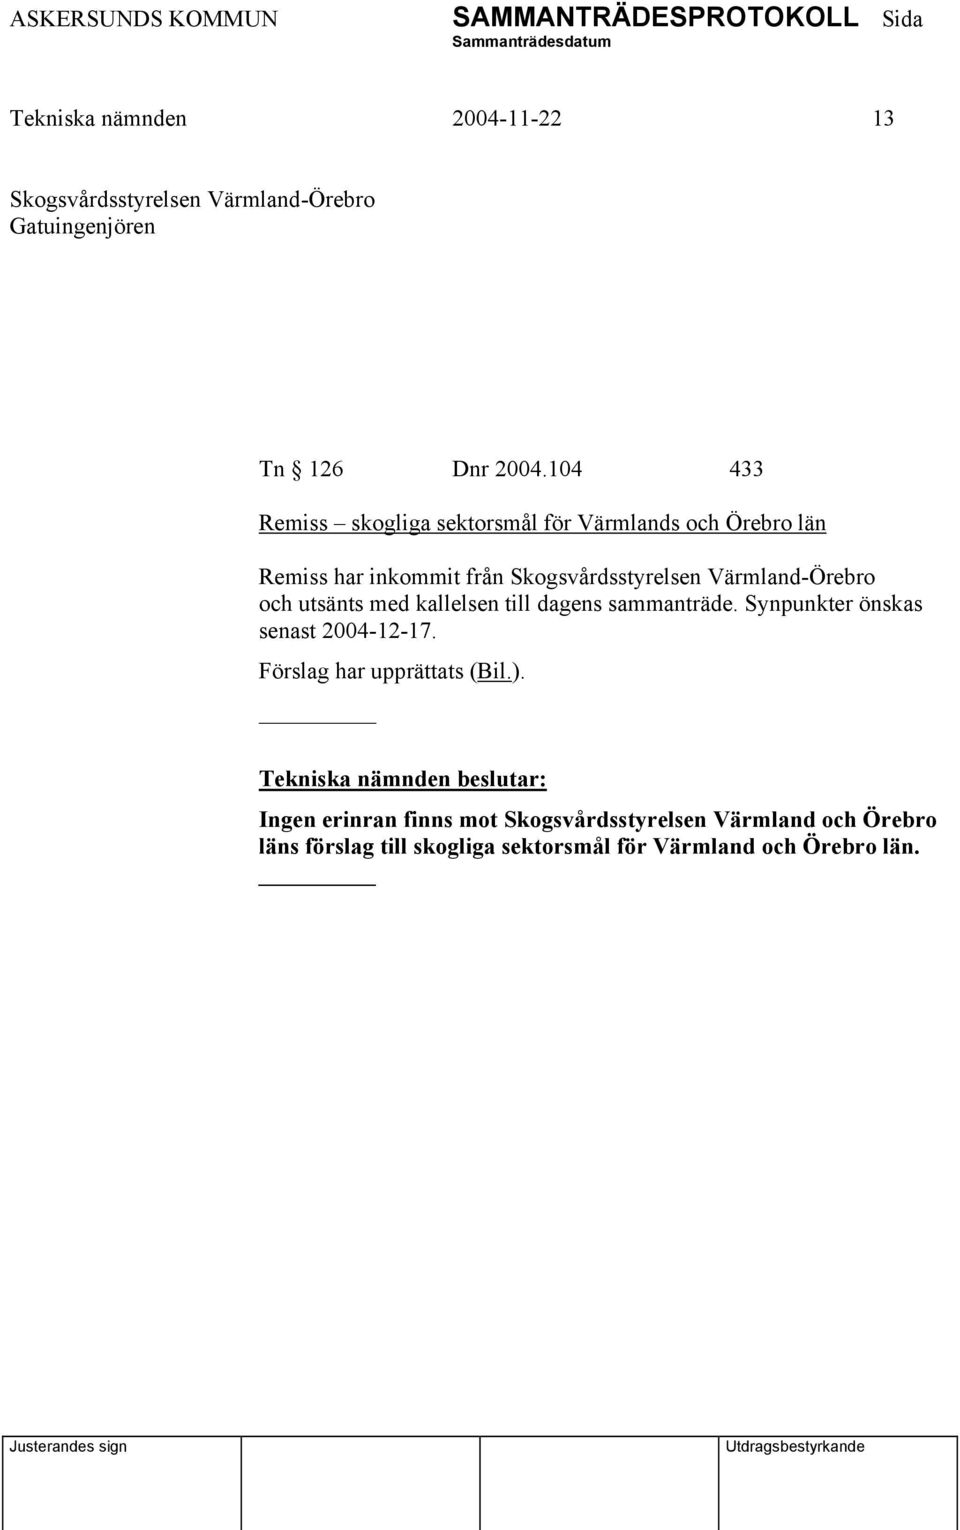 Värmland-Örebro och utsänts med kallelsen till dagens sammanträde. Synpunkter önskas senast 2004-12-17.